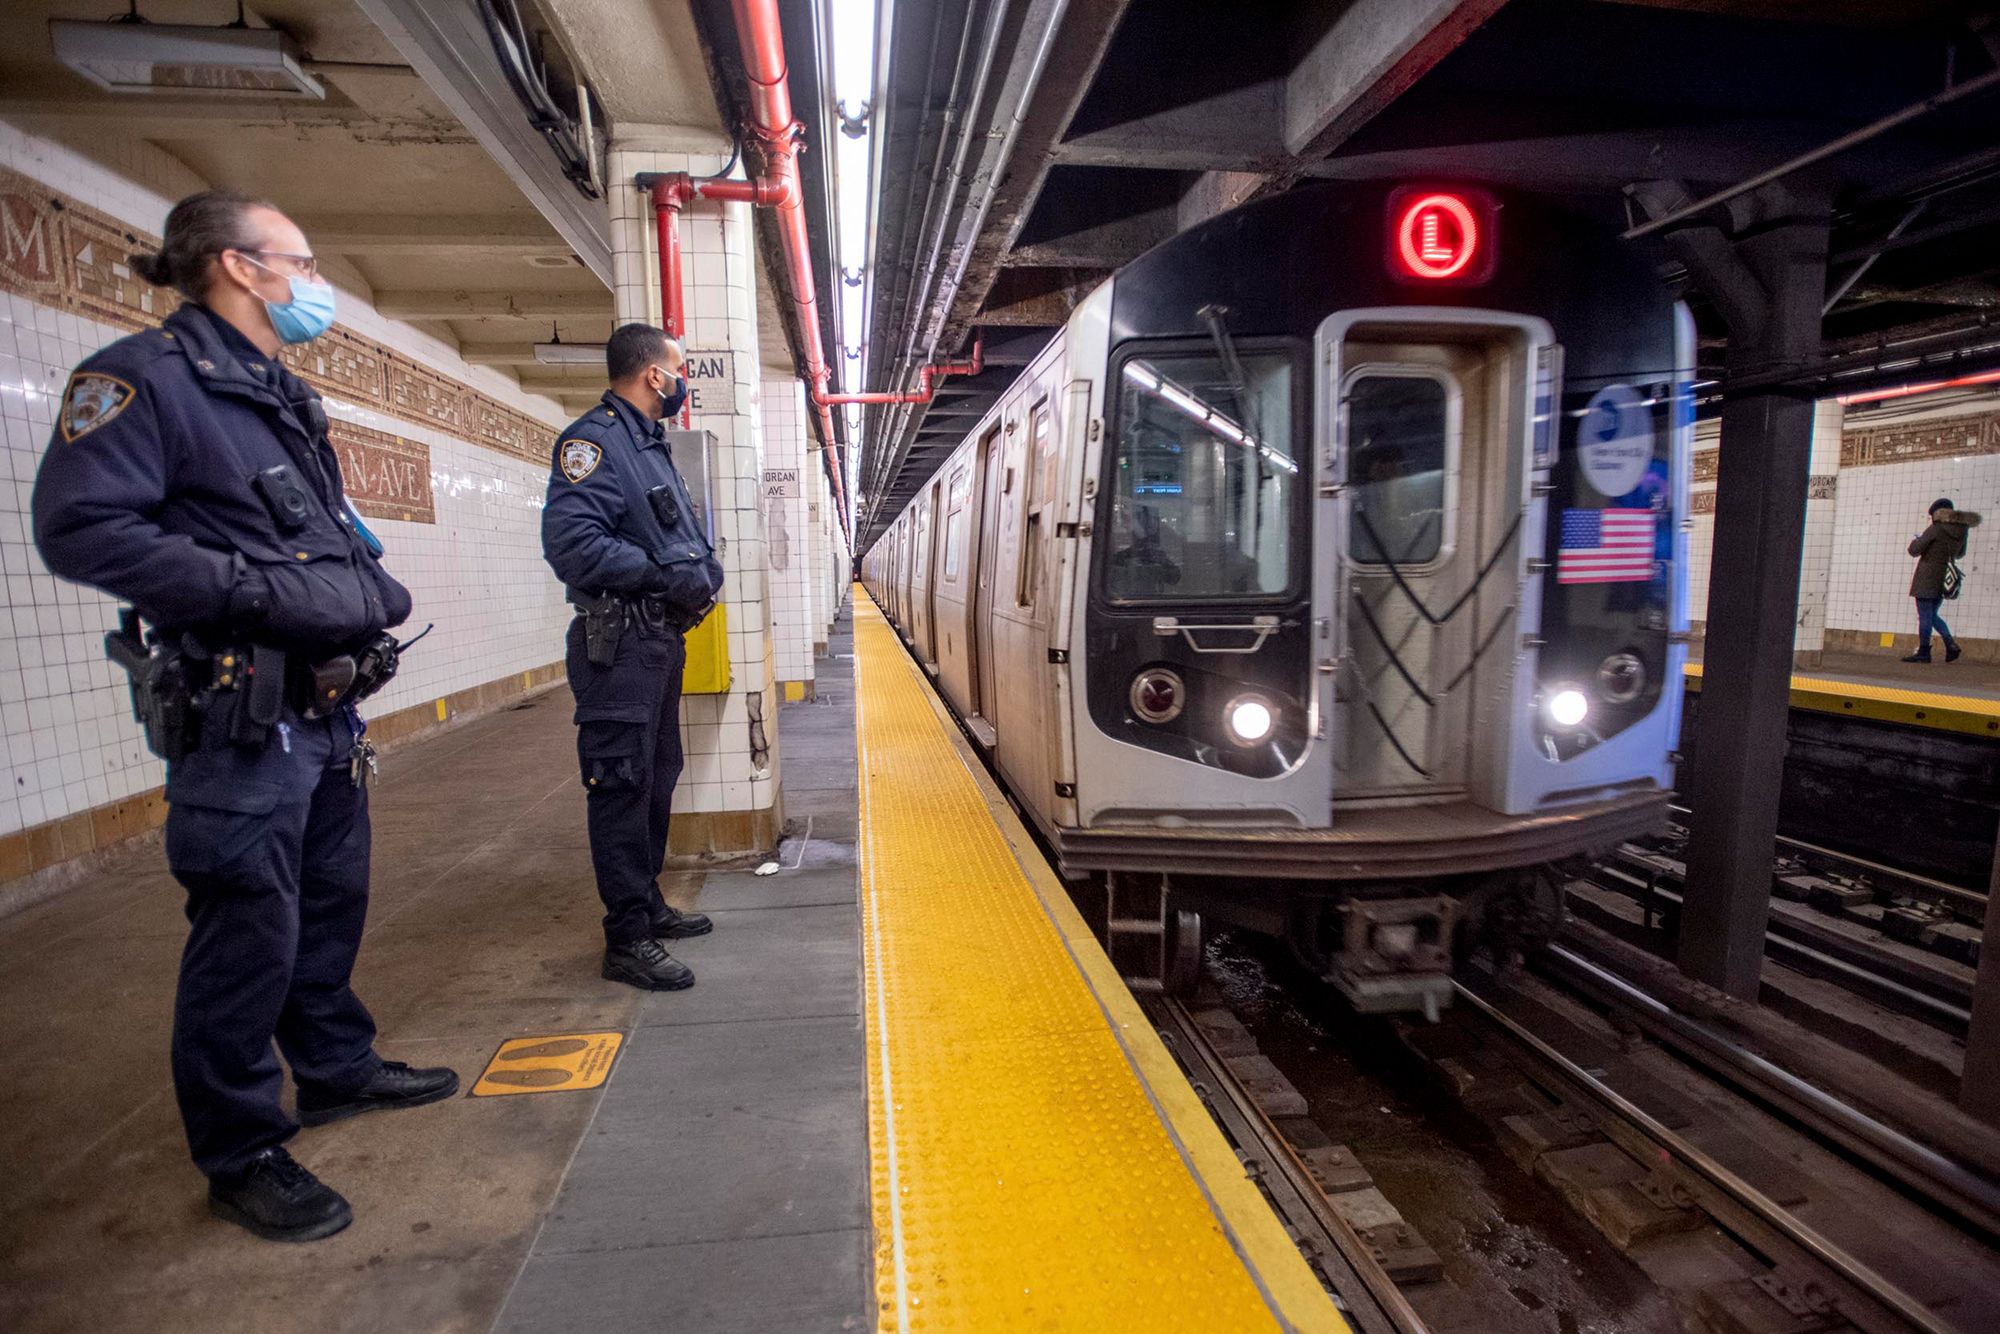 为遏制纽约地铁高频犯罪现象,纽约市部署3250名警员